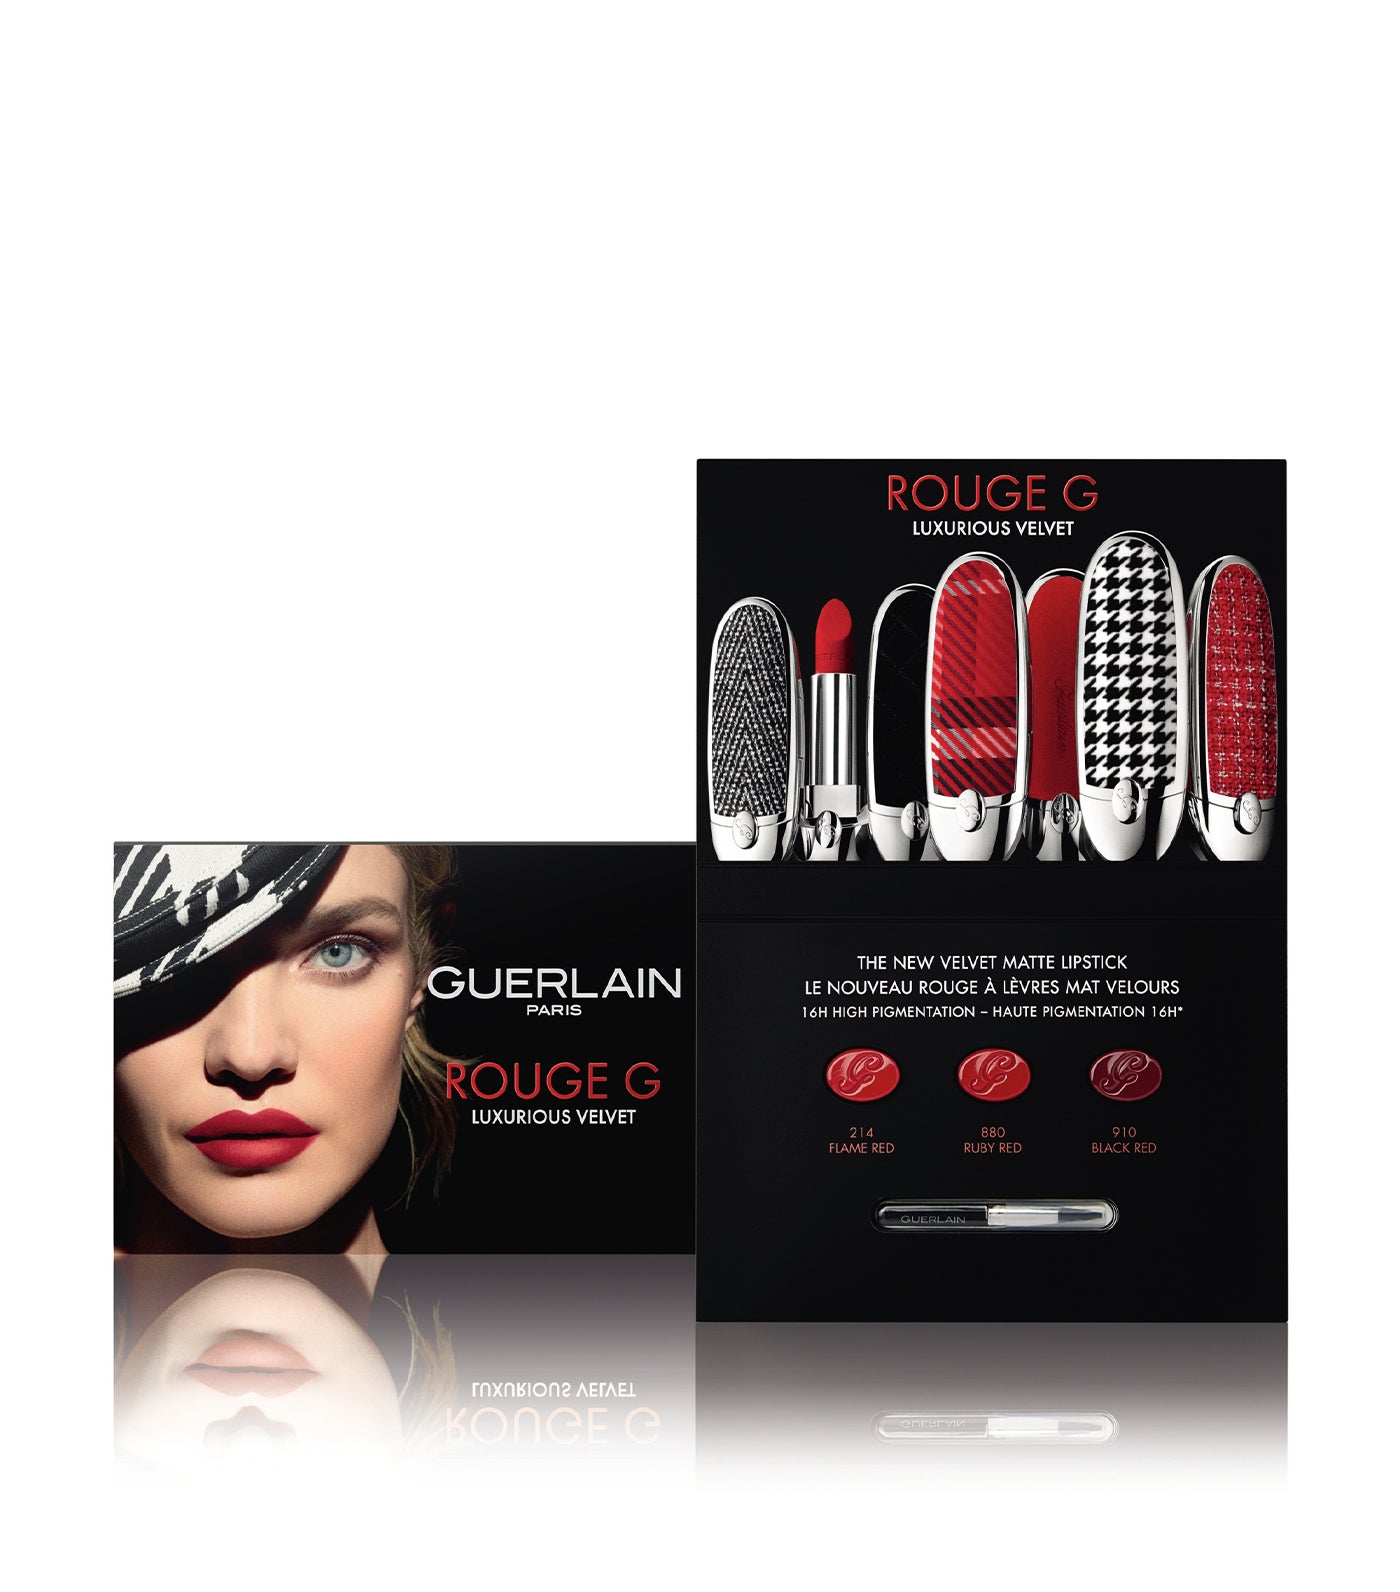 Free Rouge G de Guerlain Luxurious Velvet Lipstick Sample Card